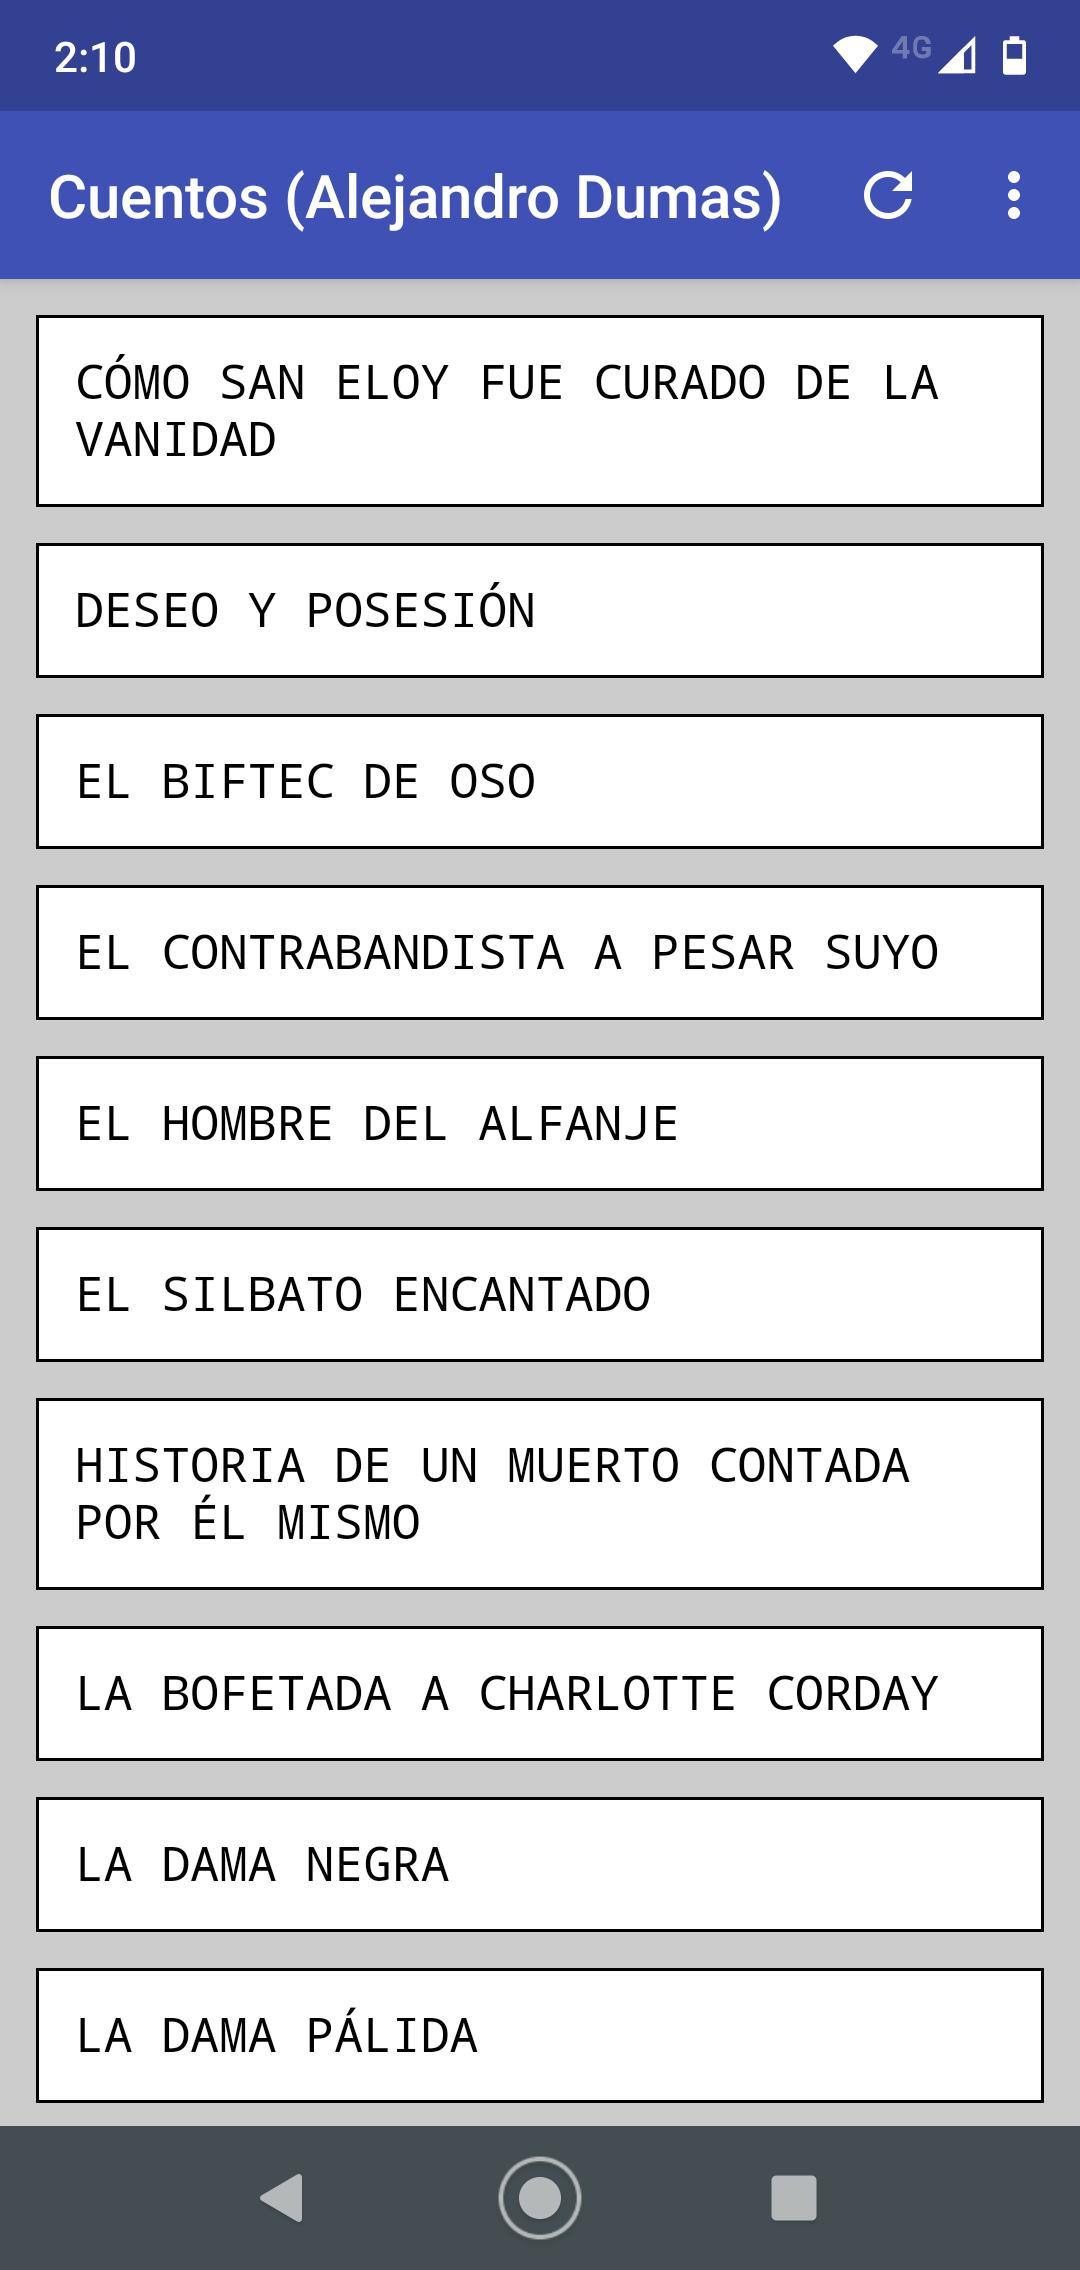 Cuentos de Alejandro Dumas APK for Android Download